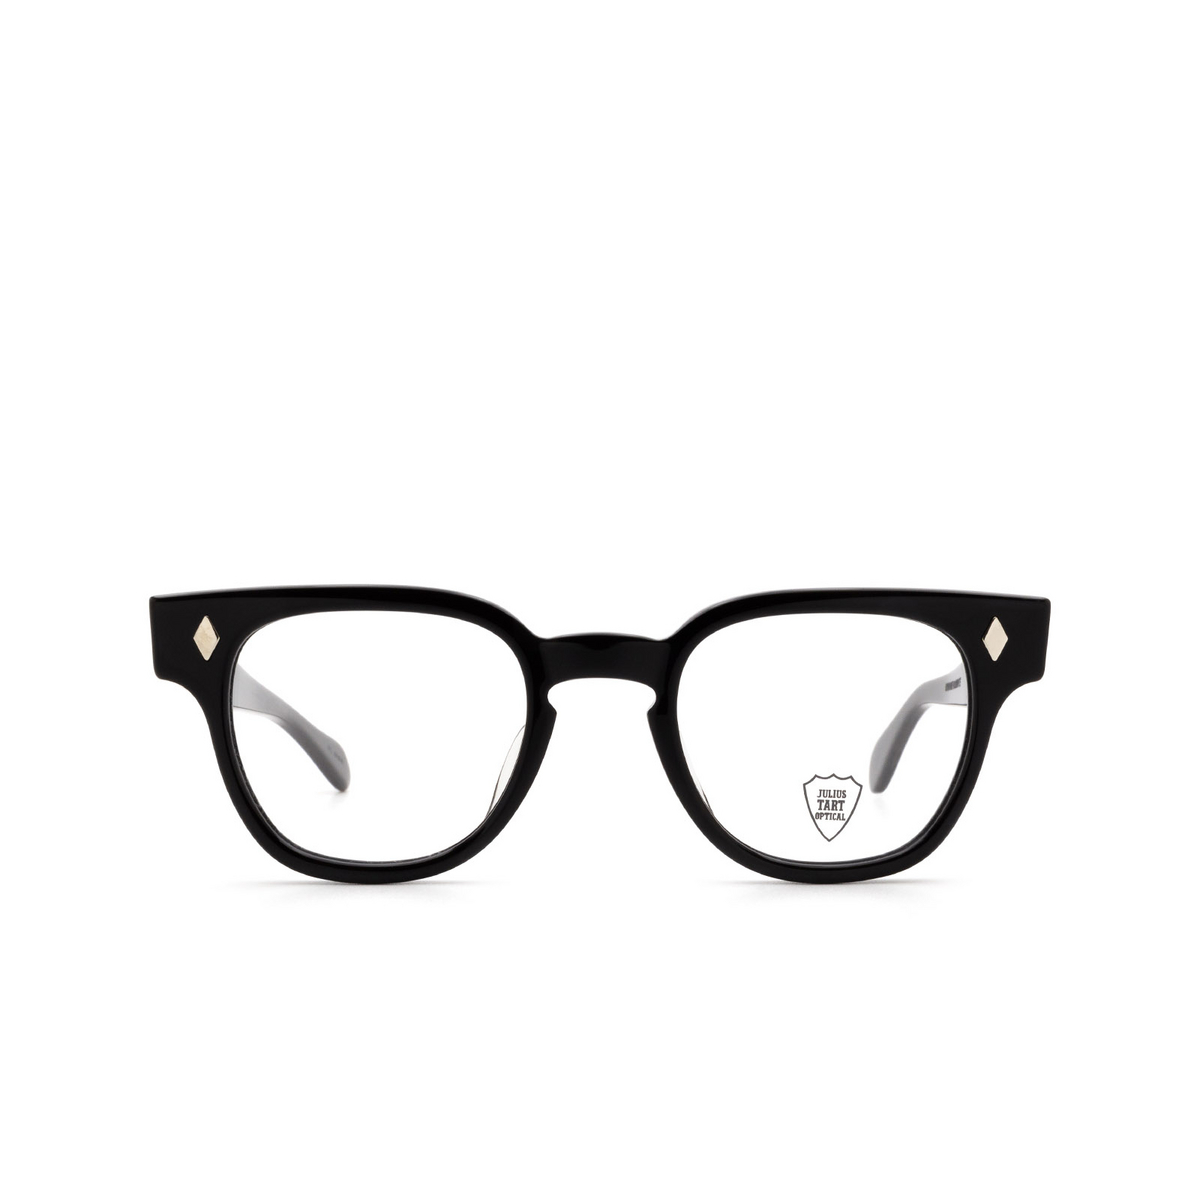 Julius Tart BRYAN Eyeglasses BLACK - front view